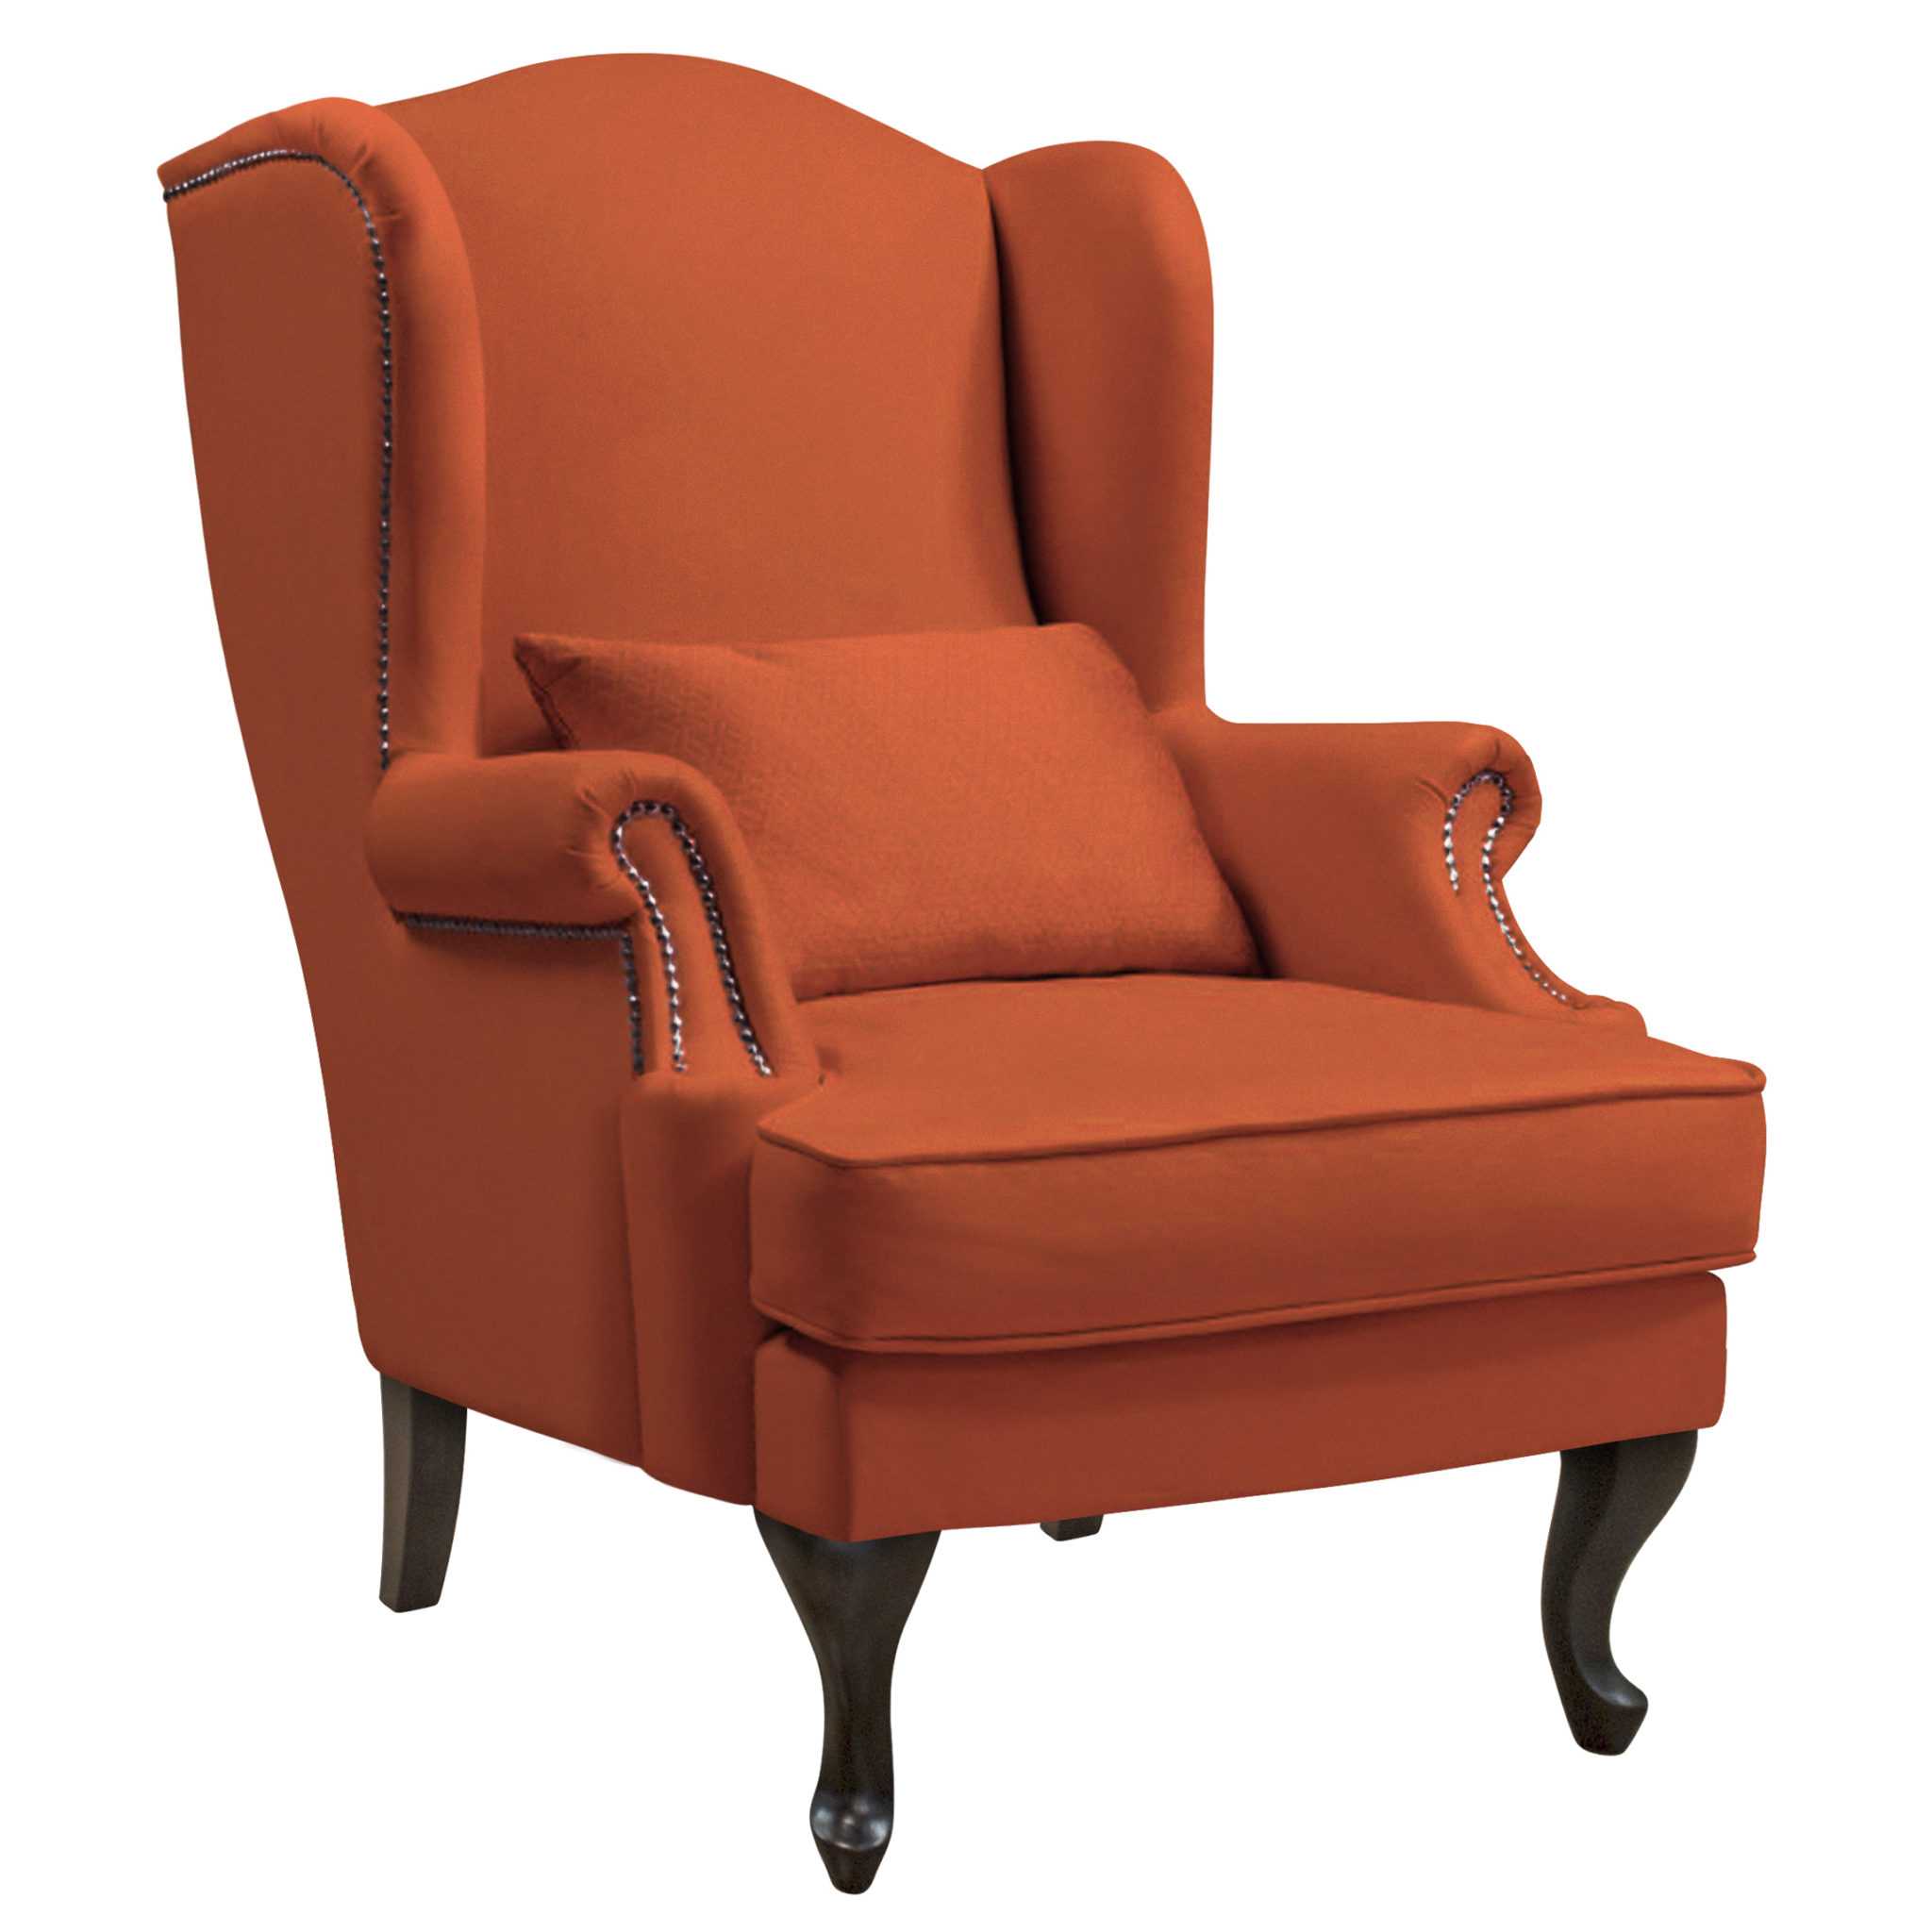 Кресла для дома с высокой спинкой, характеристики изделий